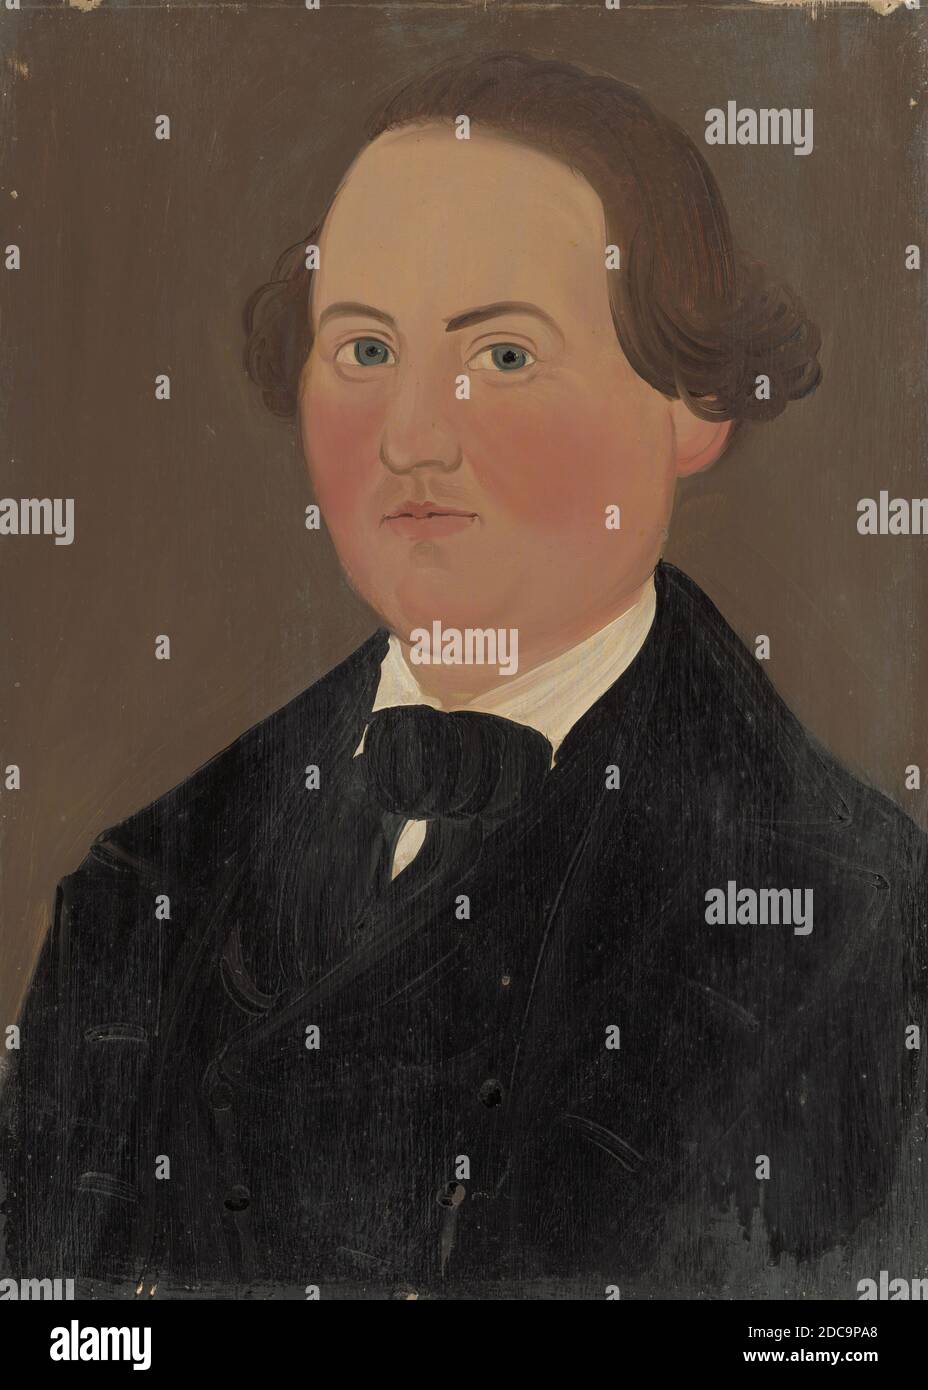 Prior-Hamblin School, (pintor), americano, activo mediados del siglo 19, marido, c. 1845, aceite sobre cartón, total: 36.4 x 26 cm (14 5/16 x 10 1/4 in.), enmarcado: 51.4 x 41.2 x 3.1 cm (20 1/4 x 16 1/4 x 1 1/4 in Foto de stock